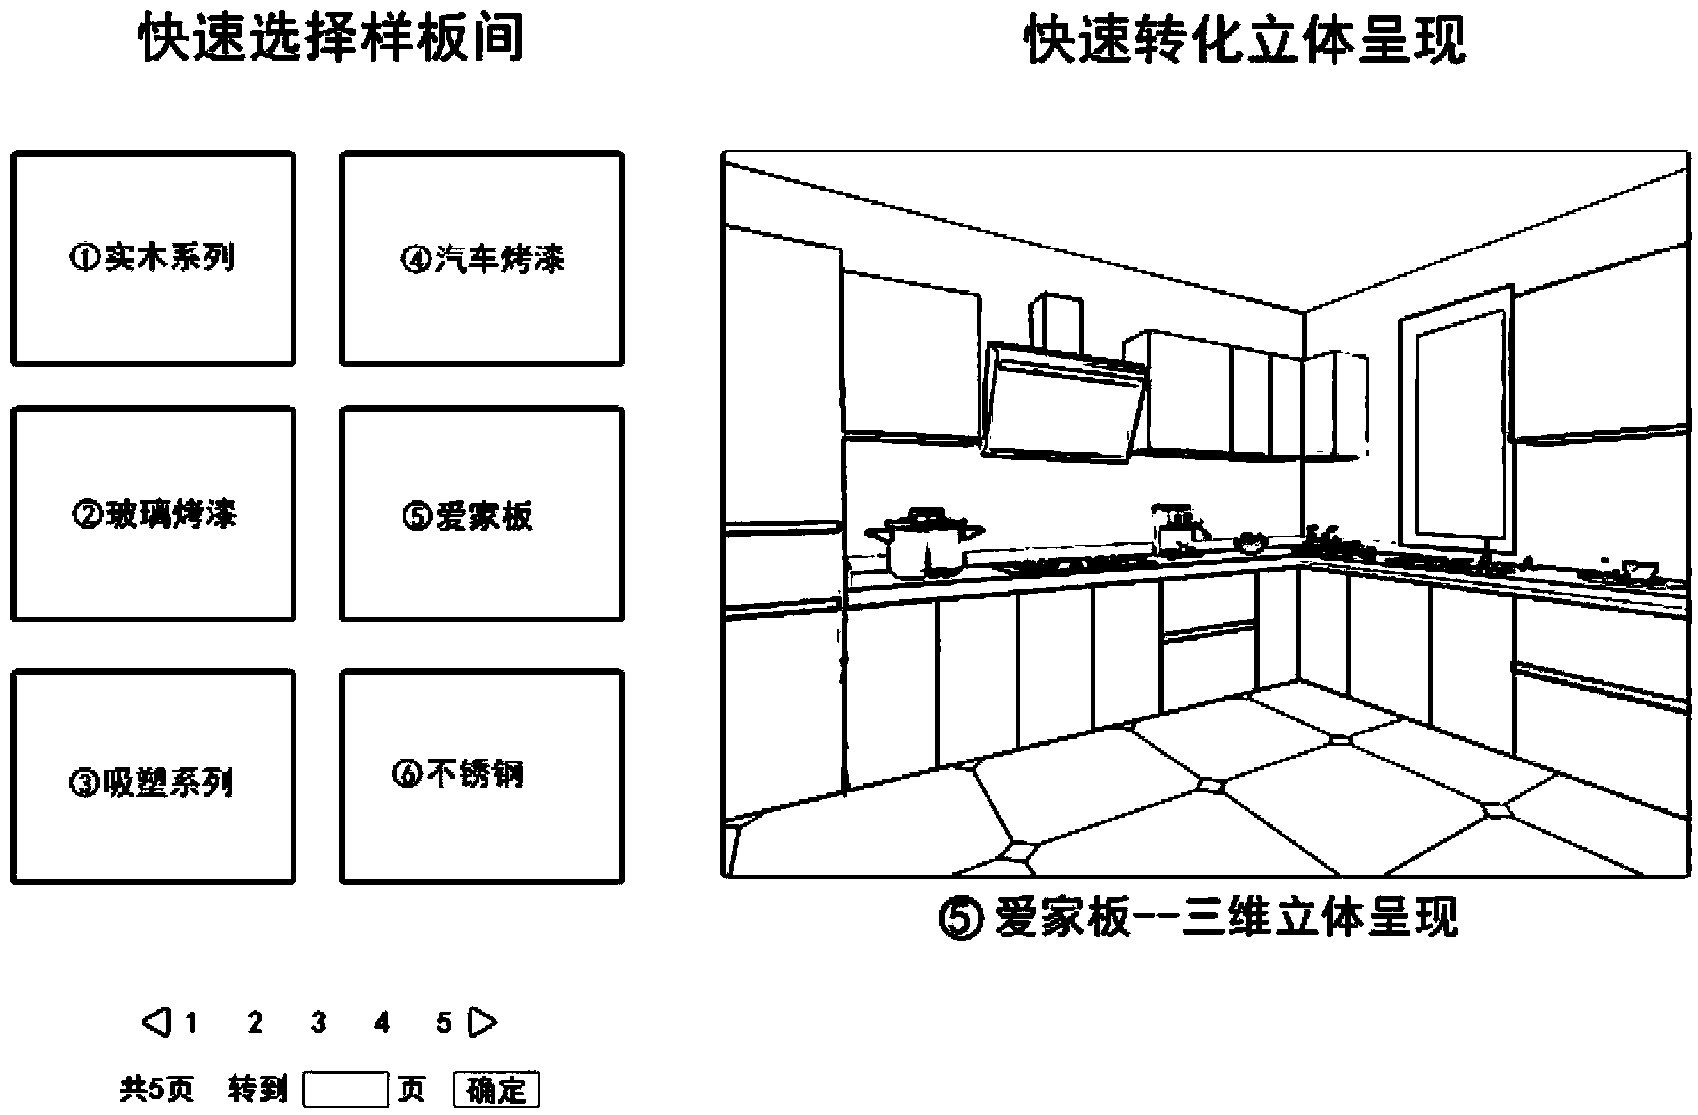 Kitchen design scheme generating method